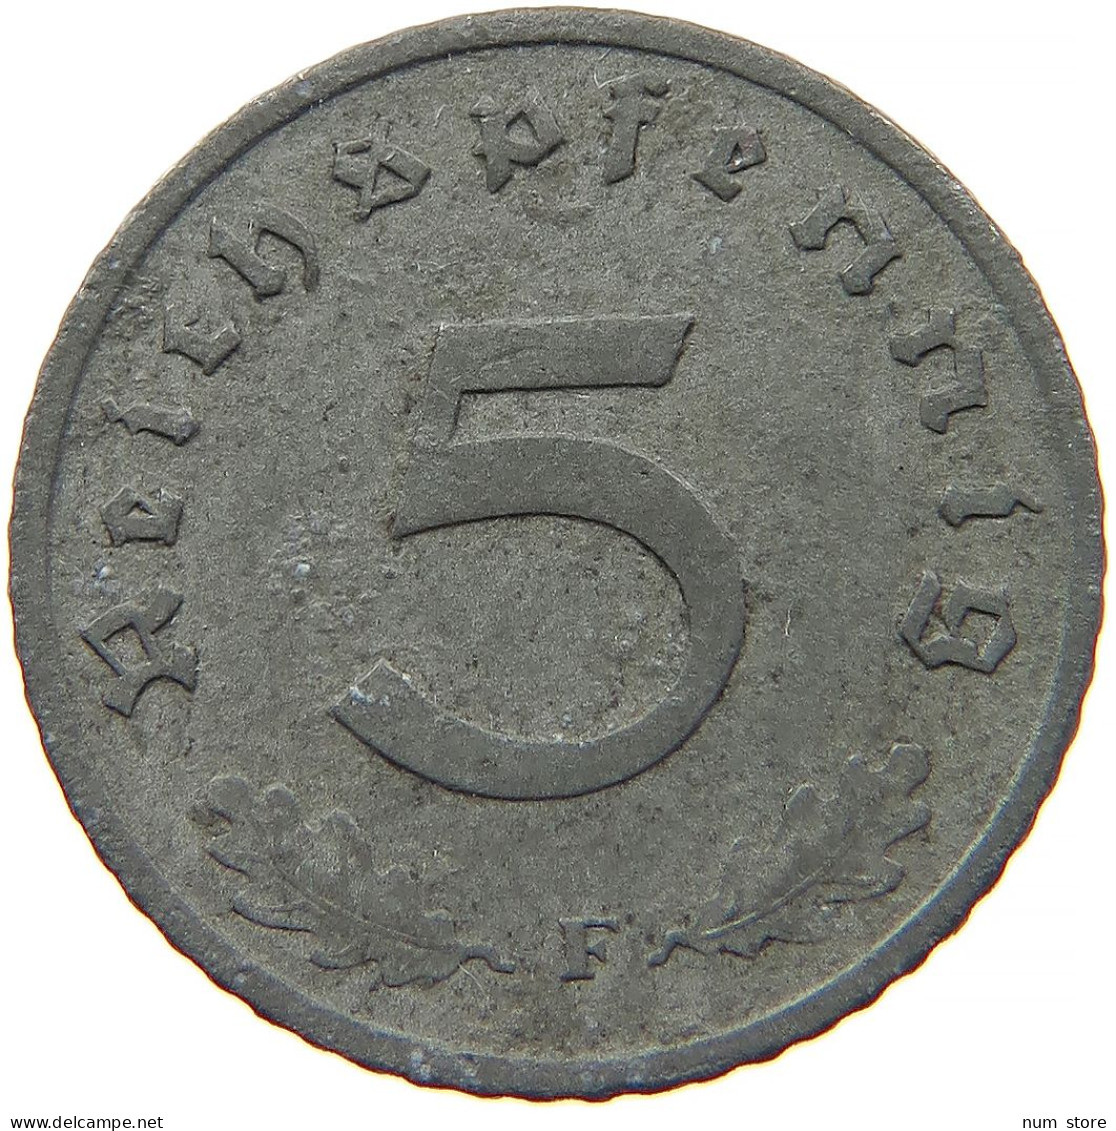 GERMANY 5 REICHSPFENNIG 1941 F #s091 0895 - 5 Reichspfennig